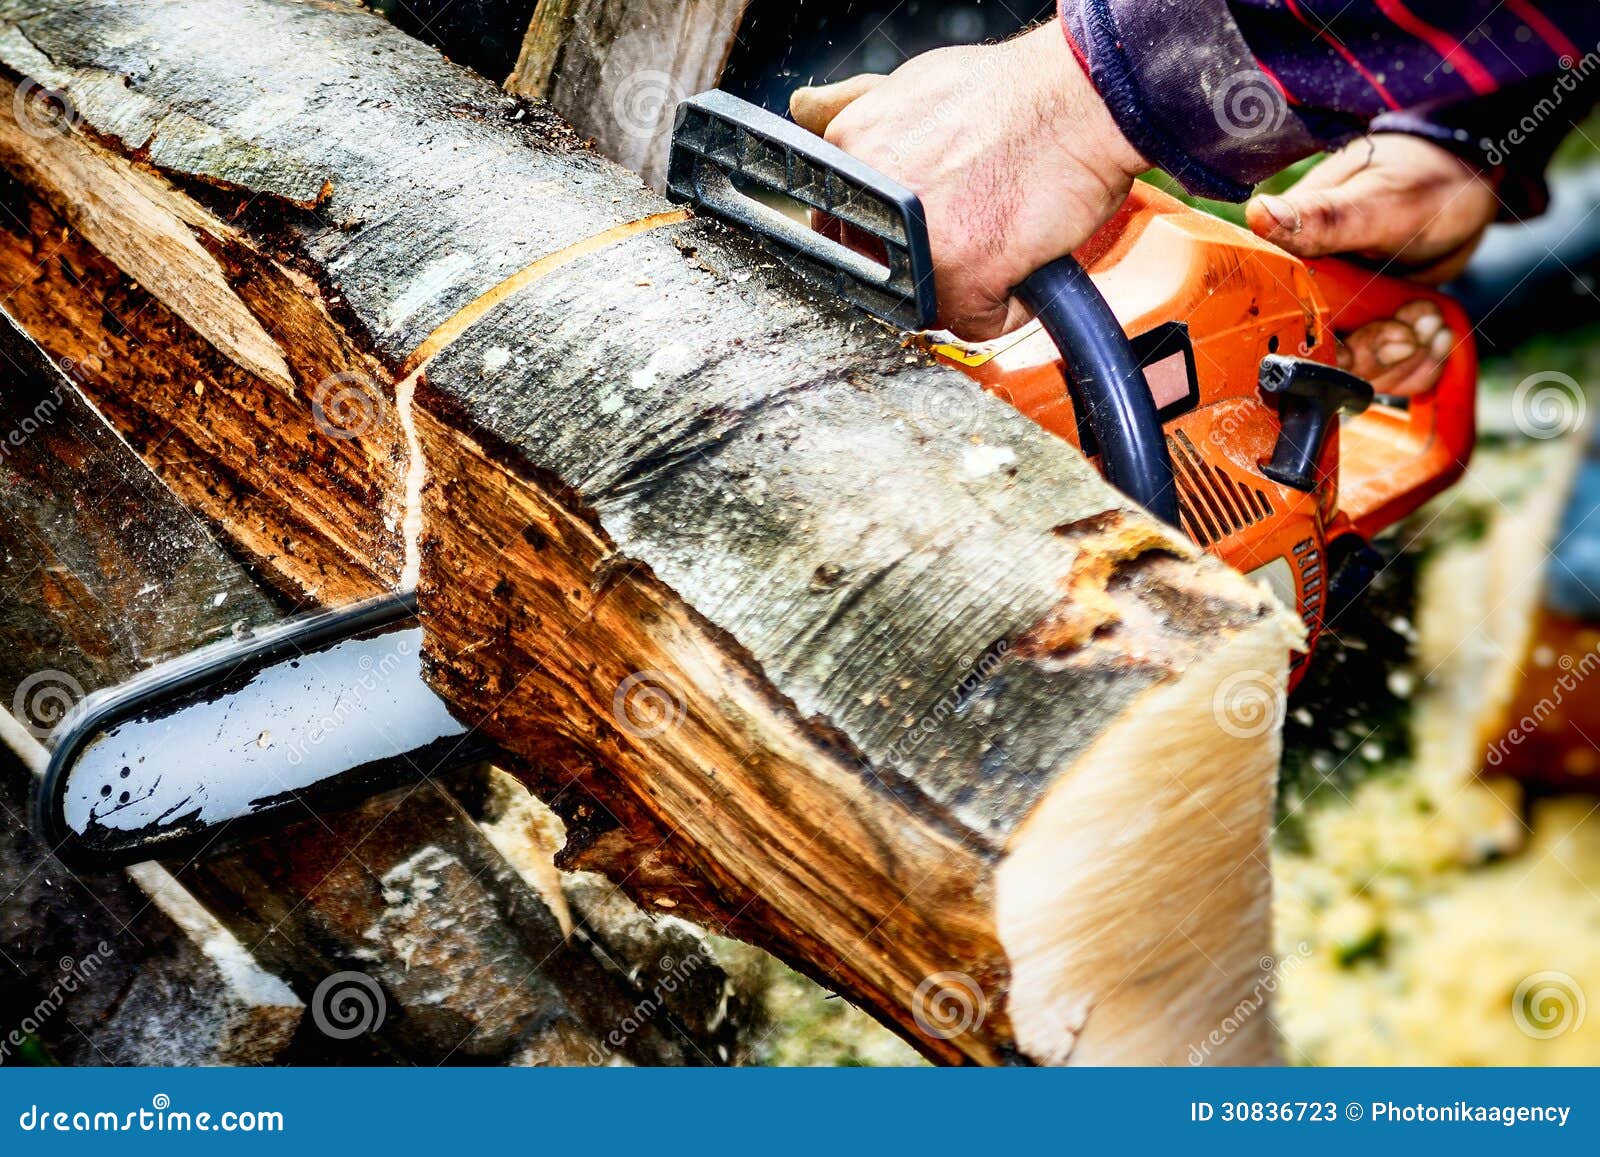 新款汽油锯2500易启动优质伐木锯含锯条园林工具油锯厂家直销-阿里巴巴